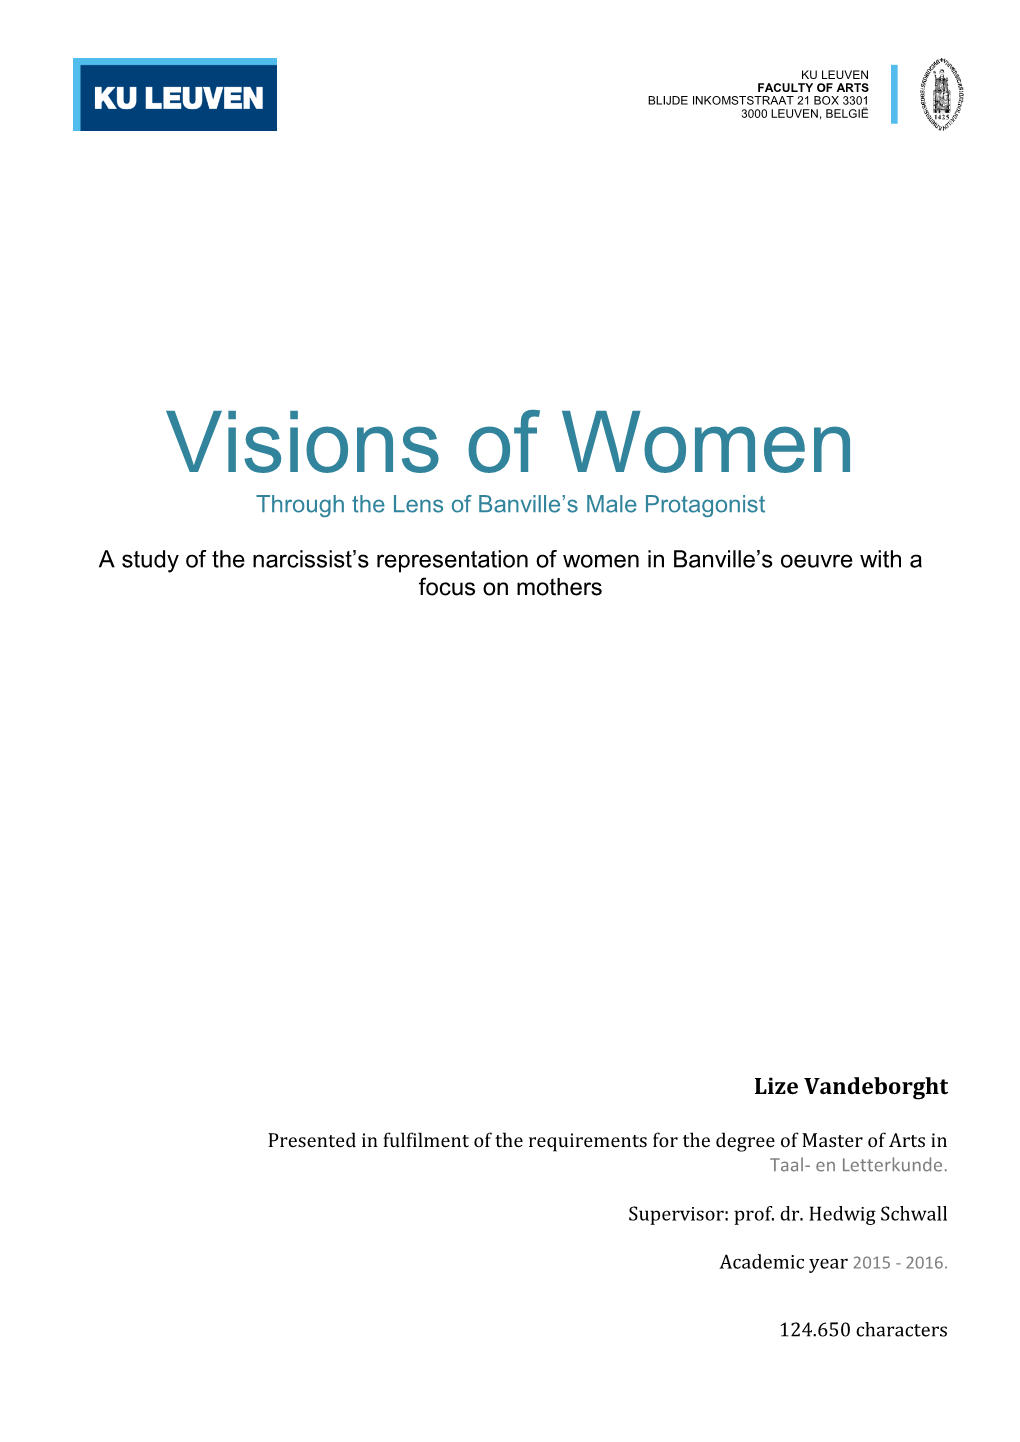 Visions of Women 7KURXJKWKH/HQVRI%DQYLOOH¶V0DOH3URWDJRQLVW